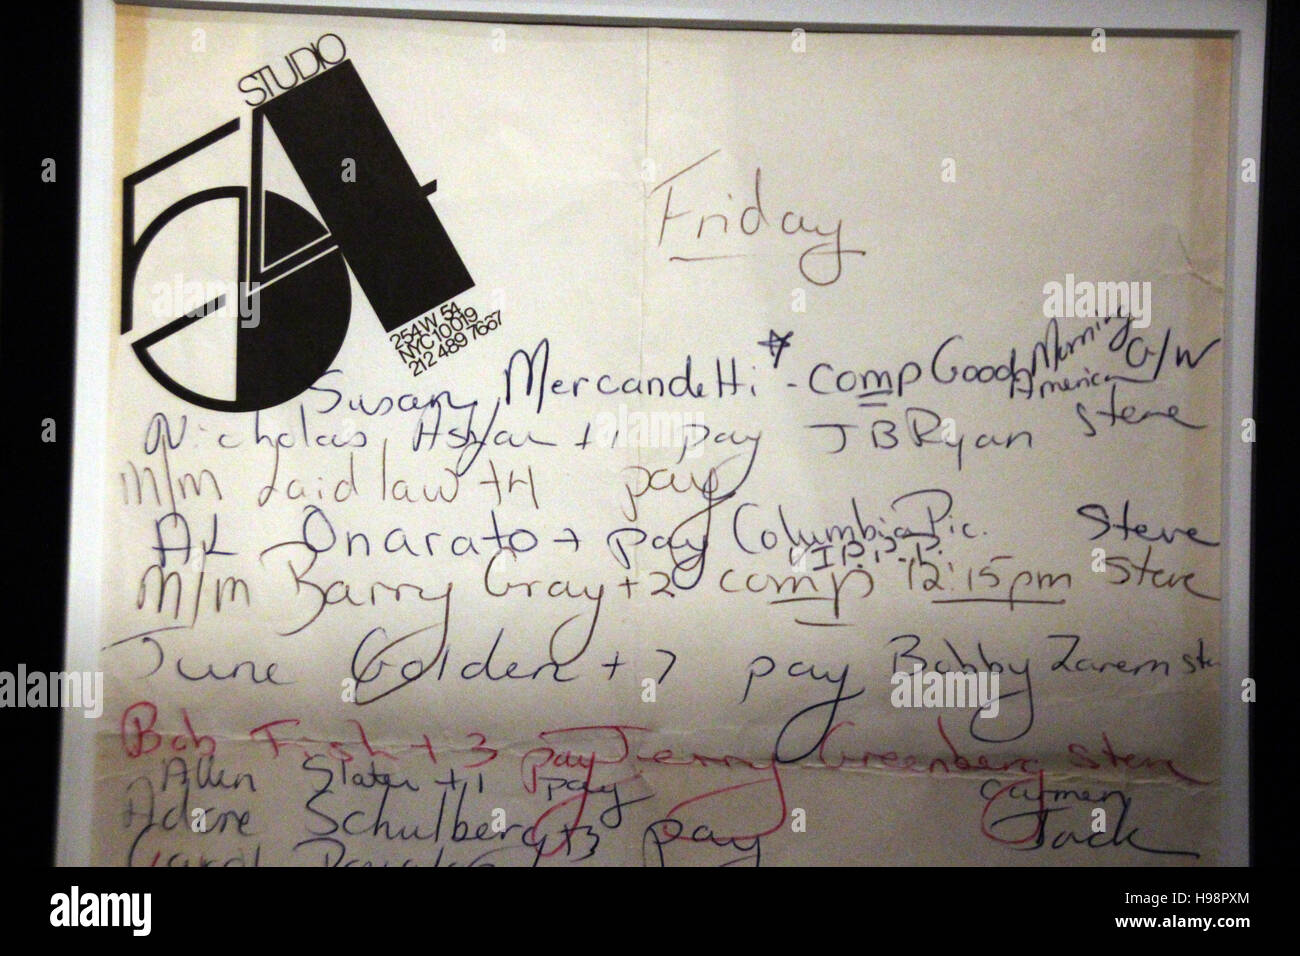 Manhattan, New York, USA. 18 Nov, 2016. Une liste d'invités de Studio 54 est exposée dans le musée de la ville de New York à Manhattan, New York, USA, 18 novembre 2016. Photo : Christina Horsten/dpa/Alamy Live News Banque D'Images